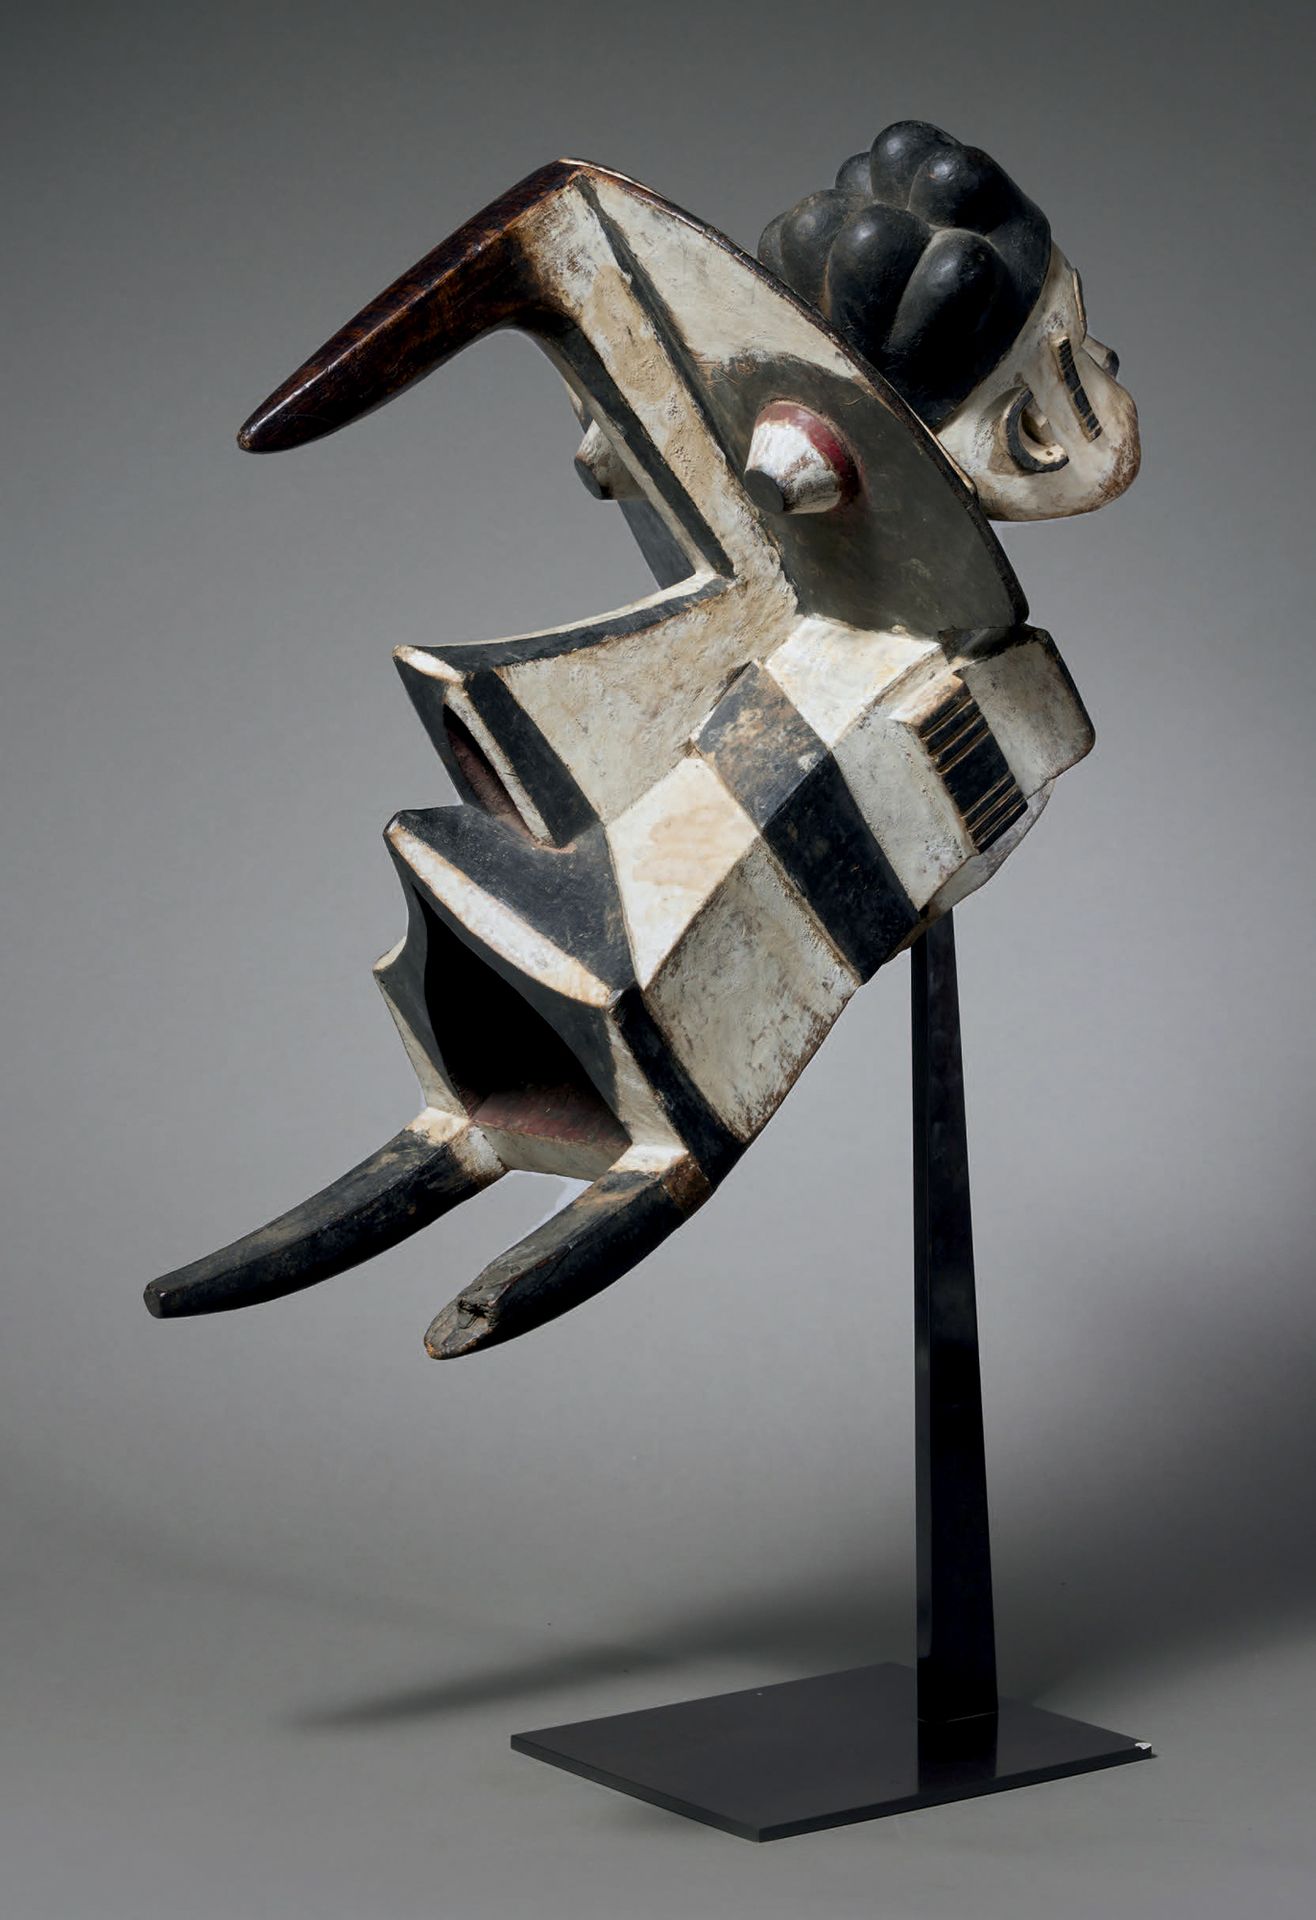 Null Igbo-Izzi-Maske Ogbodo enyi
Nigeria
Holz
H. 36 cm - L. 60 cm
Eine Maske mit&hellip;